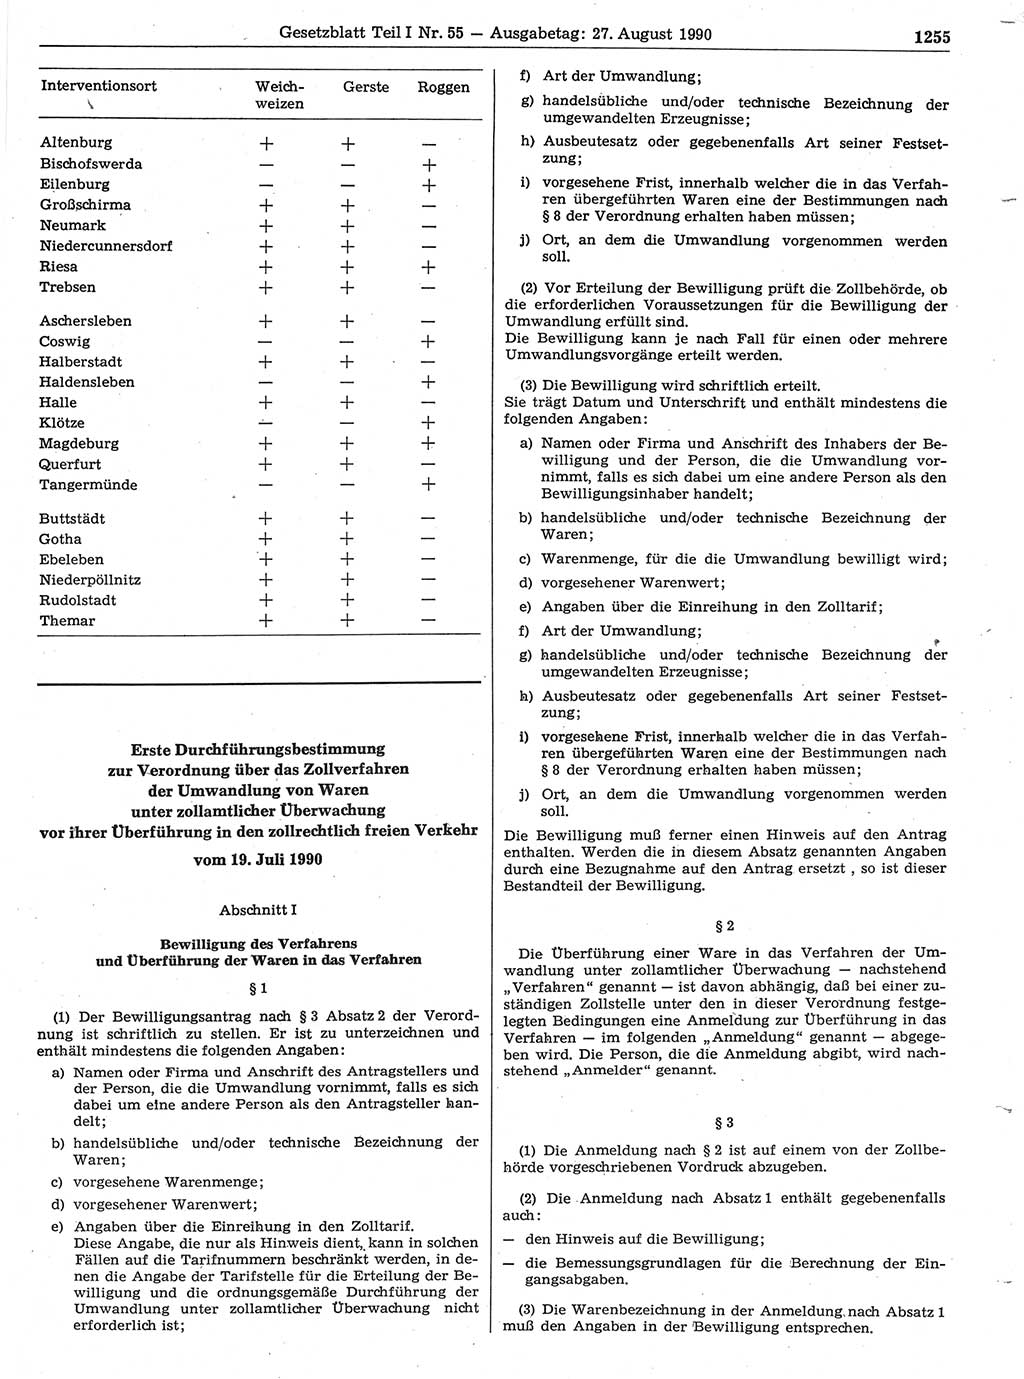 Gesetzblatt (GBl.) der Deutschen Demokratischen Republik (DDR) Teil Ⅰ 1990, Seite 1255 (GBl. DDR Ⅰ 1990, S. 1255)